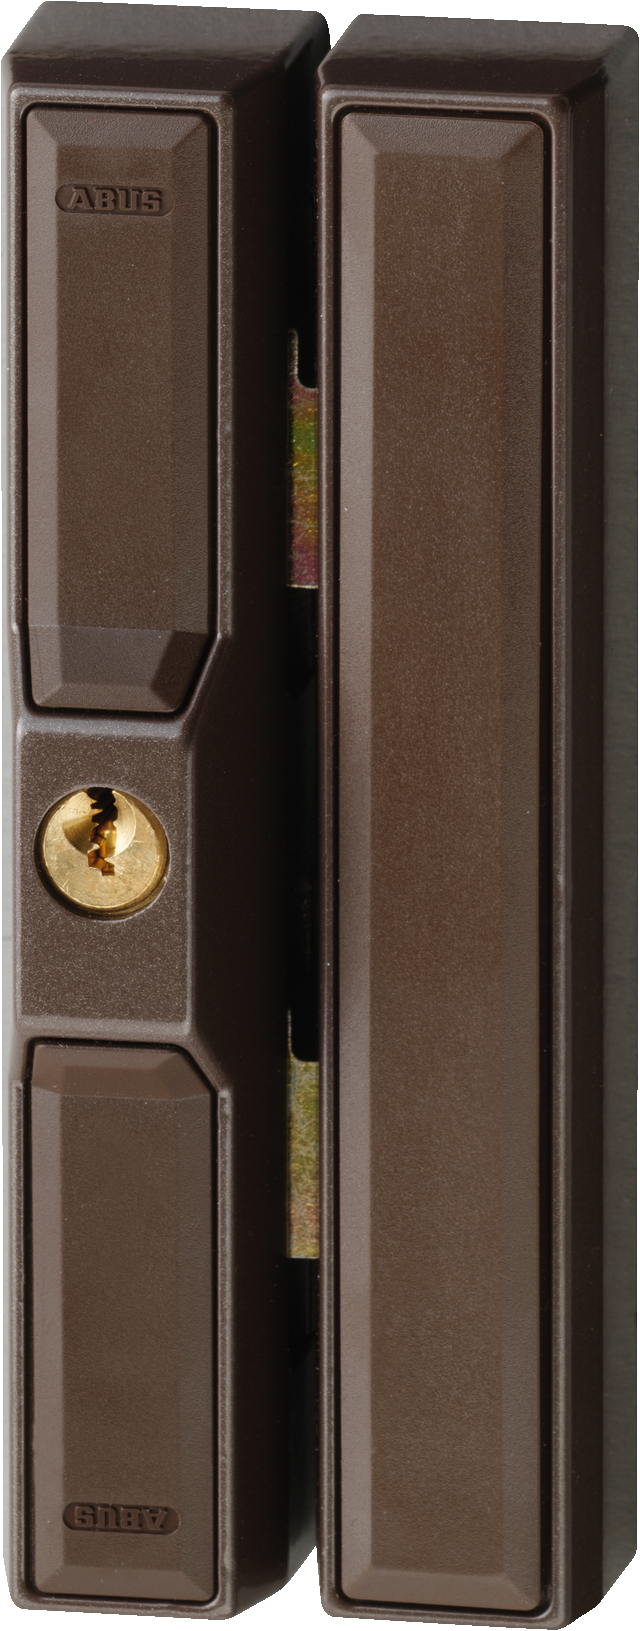 biztonsági kiegészítő ablakzár FTS88 barna ferde elülső nézet